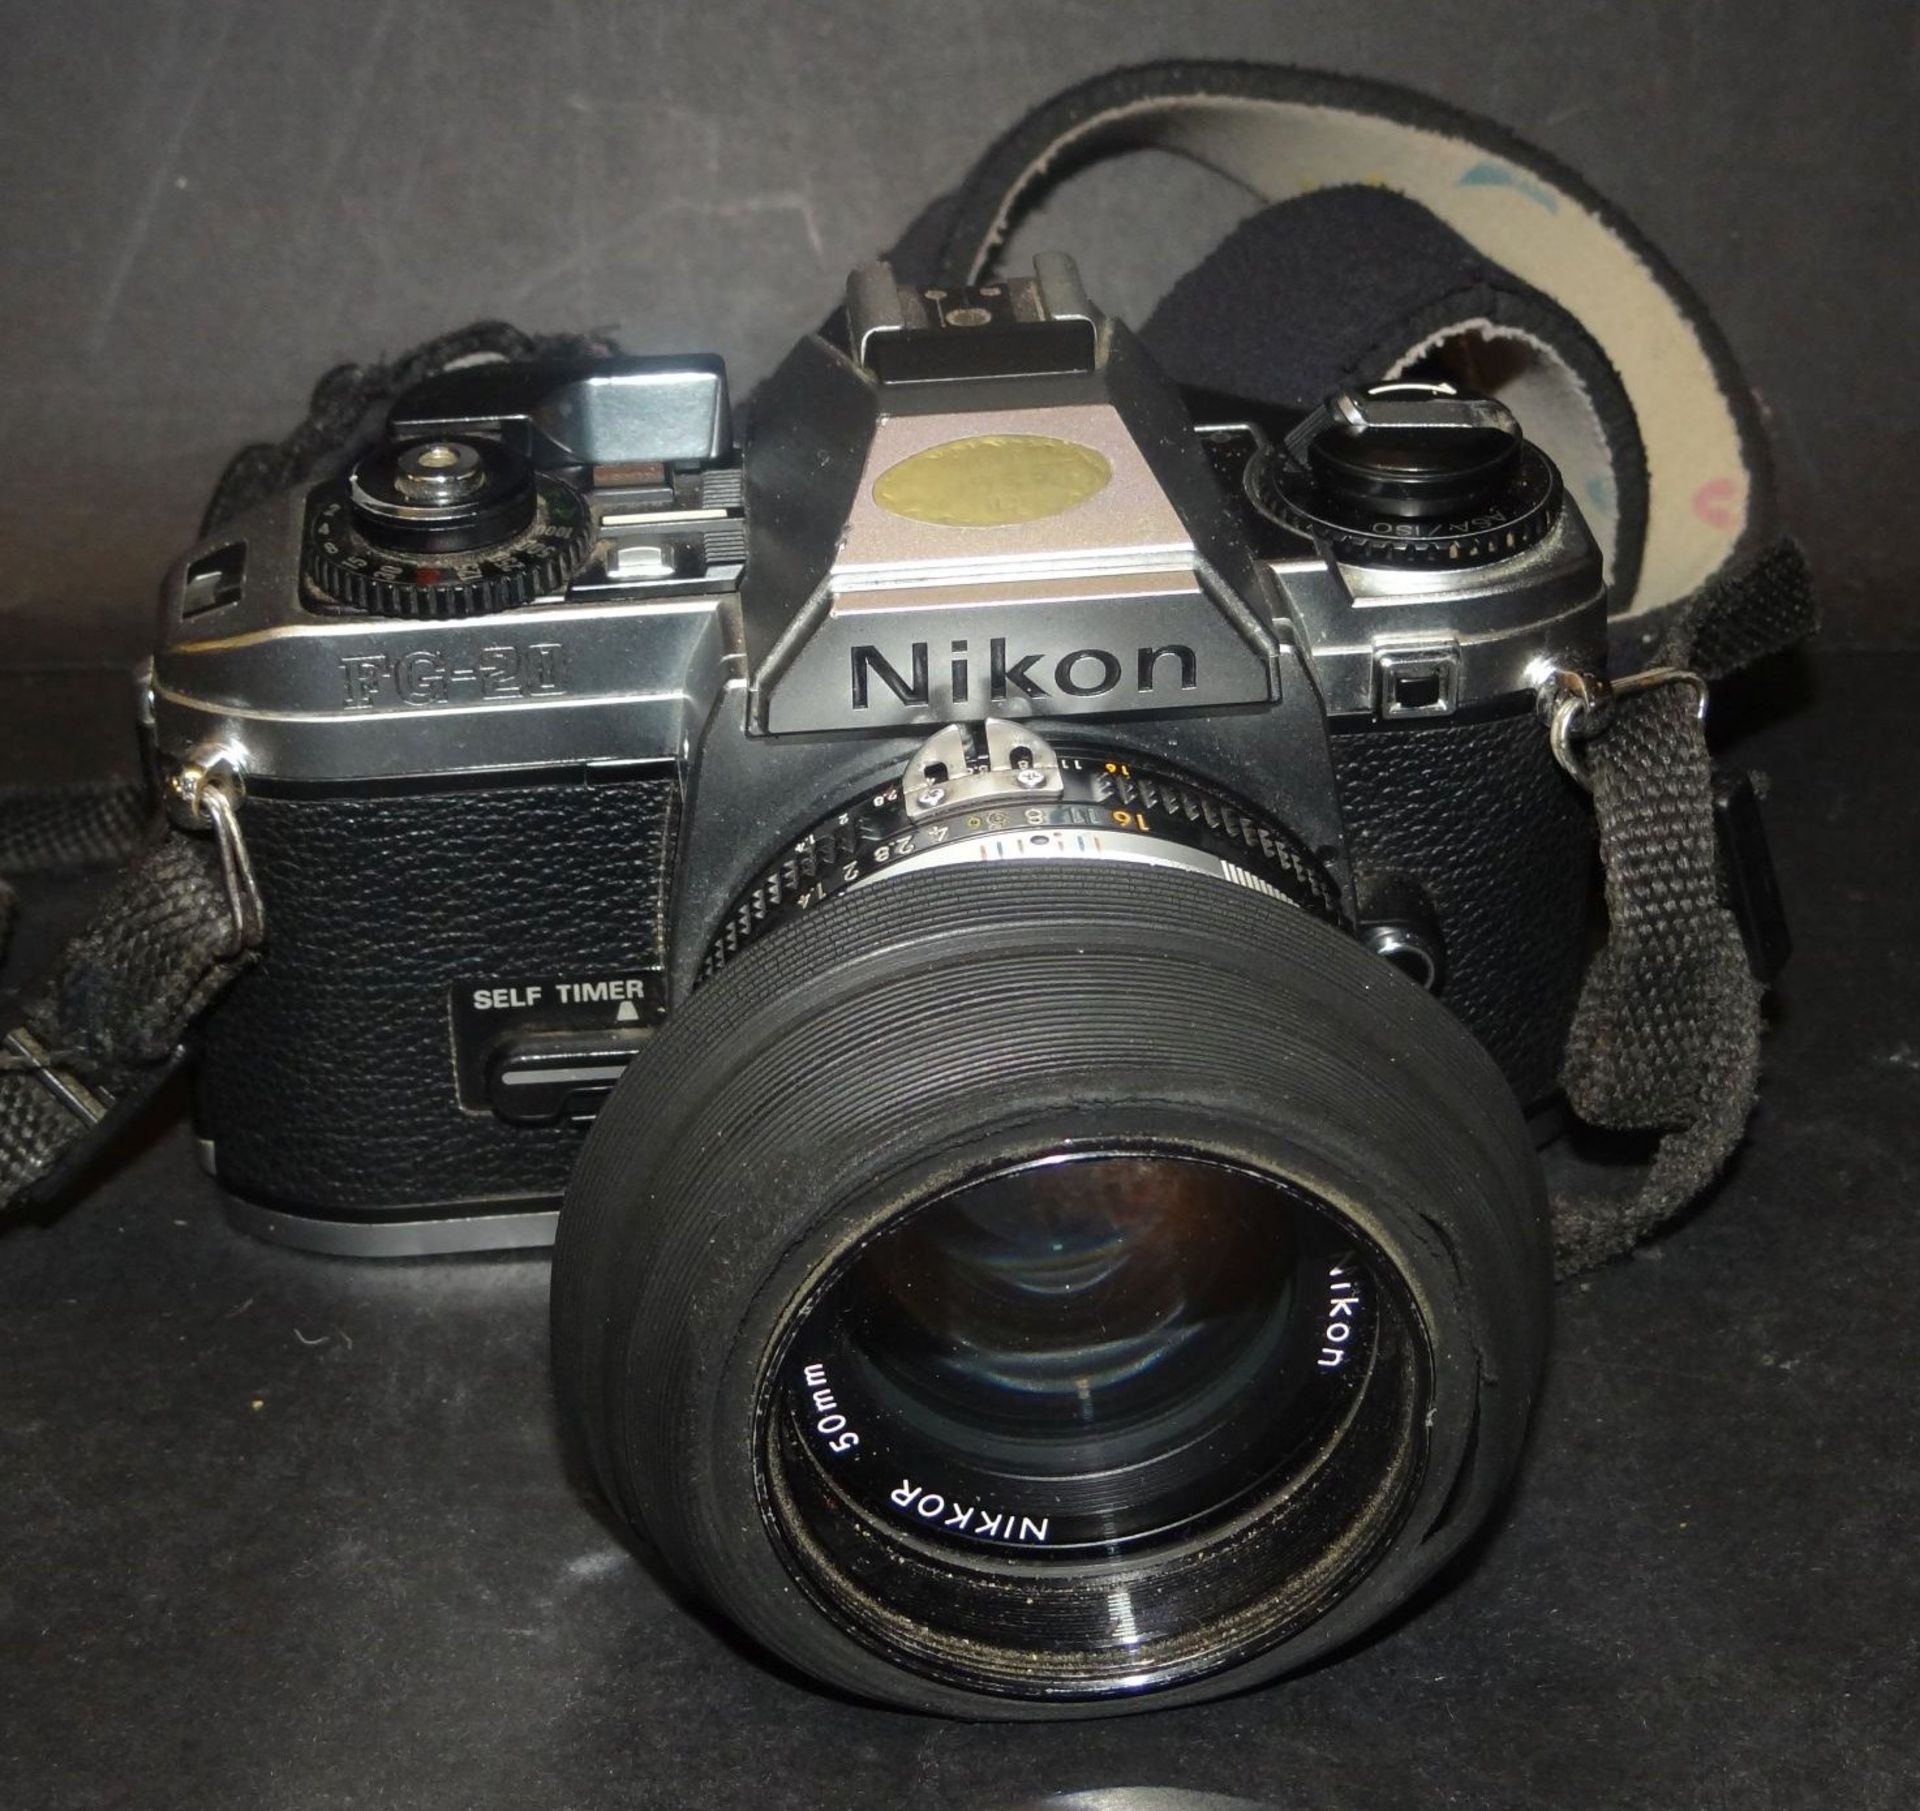 Spiegelreflexkamera "Nikon FG 20" in Tasche, Alters-u. Gebrauchsspuren, Nikon Objektiv